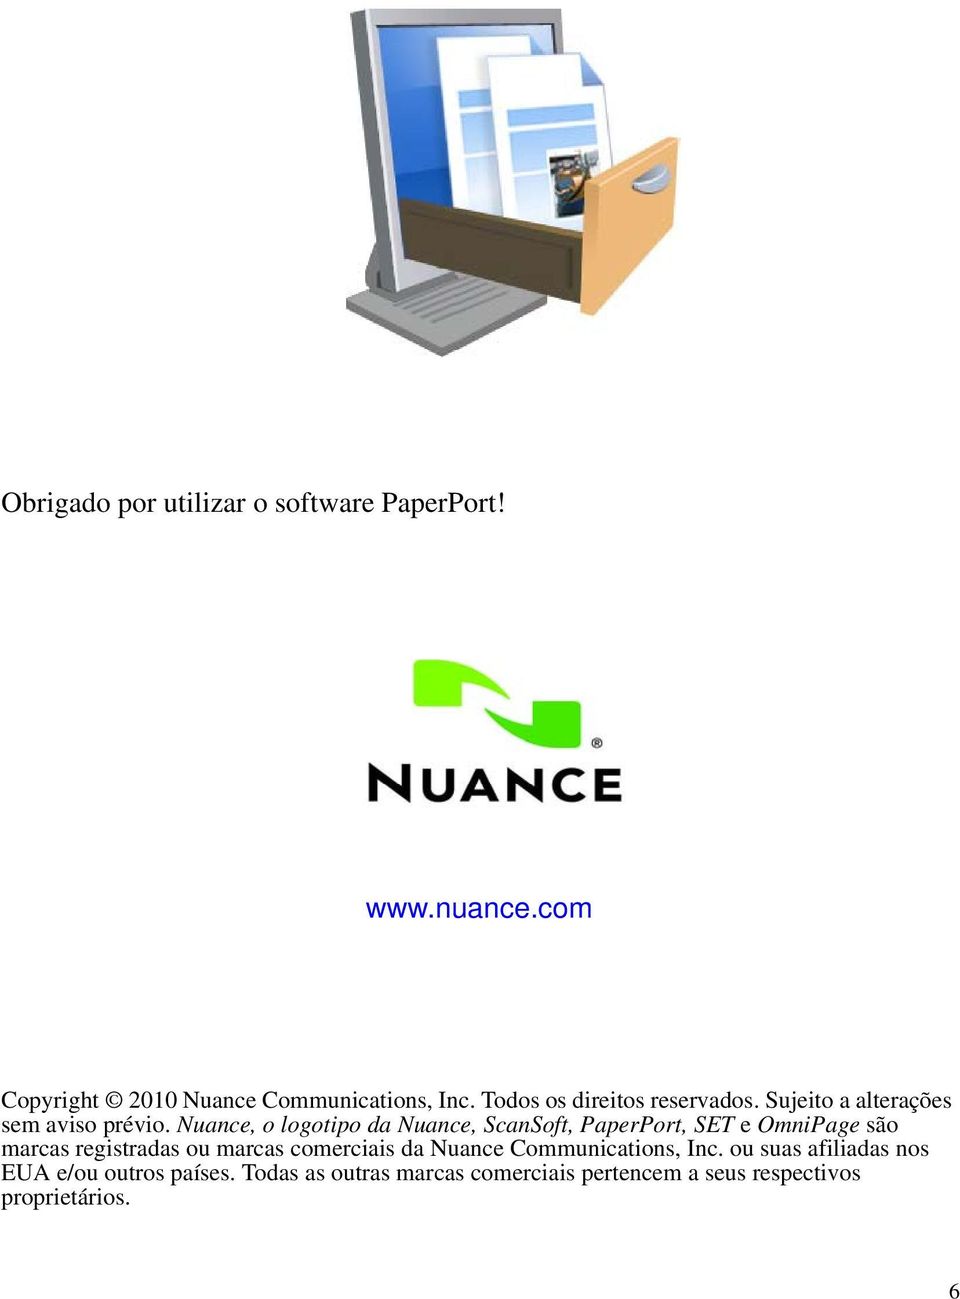 Nuance, o logotipo da Nuance, ScanSoft, PaperPort, SET e OmniPage são marcas registradas ou marcas comerciais